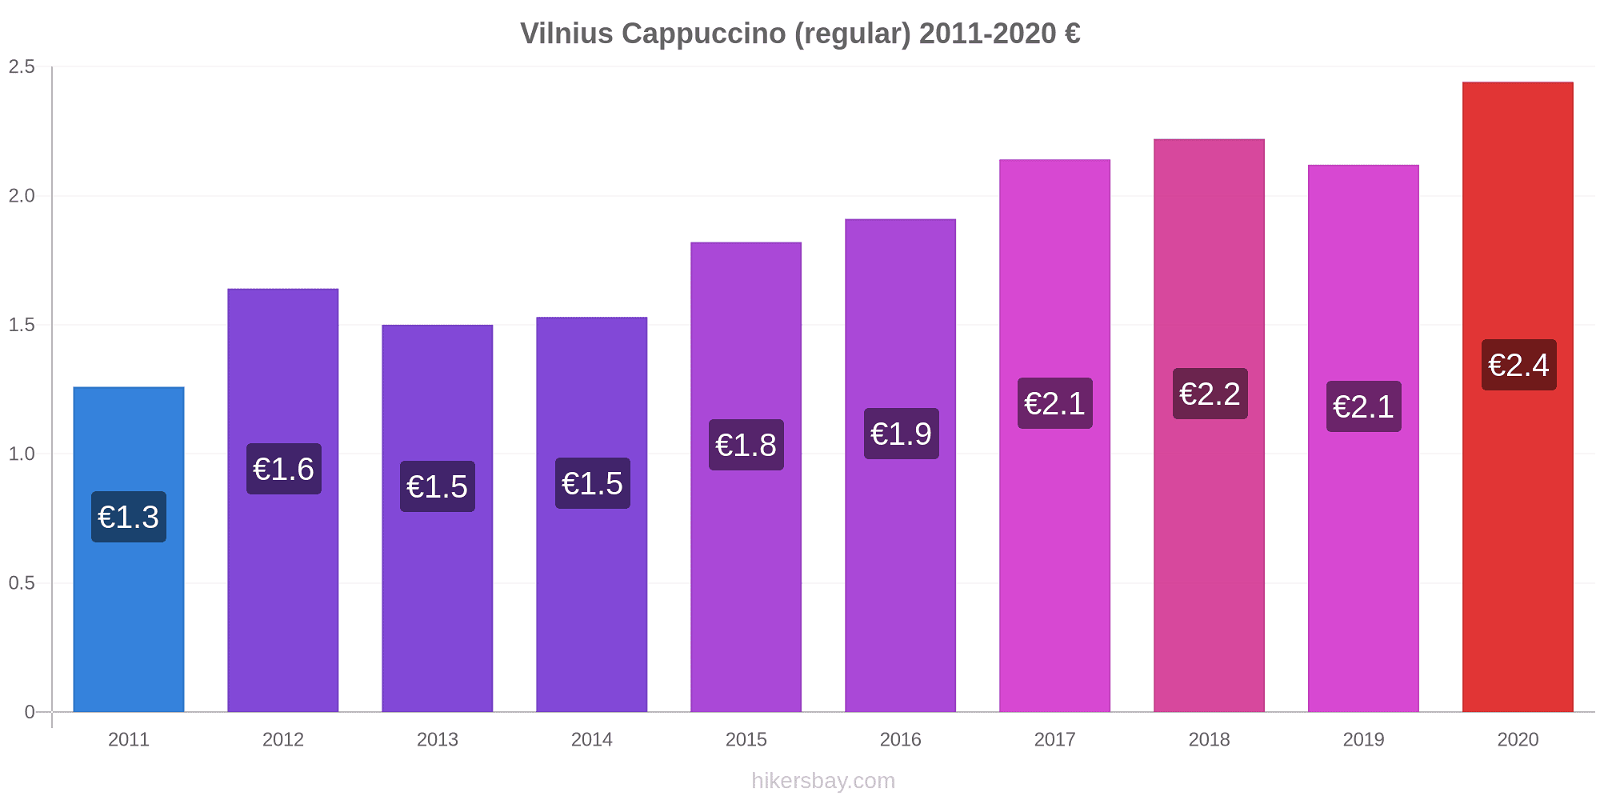 Vilnius price changes Cappuccino (regular) hikersbay.com